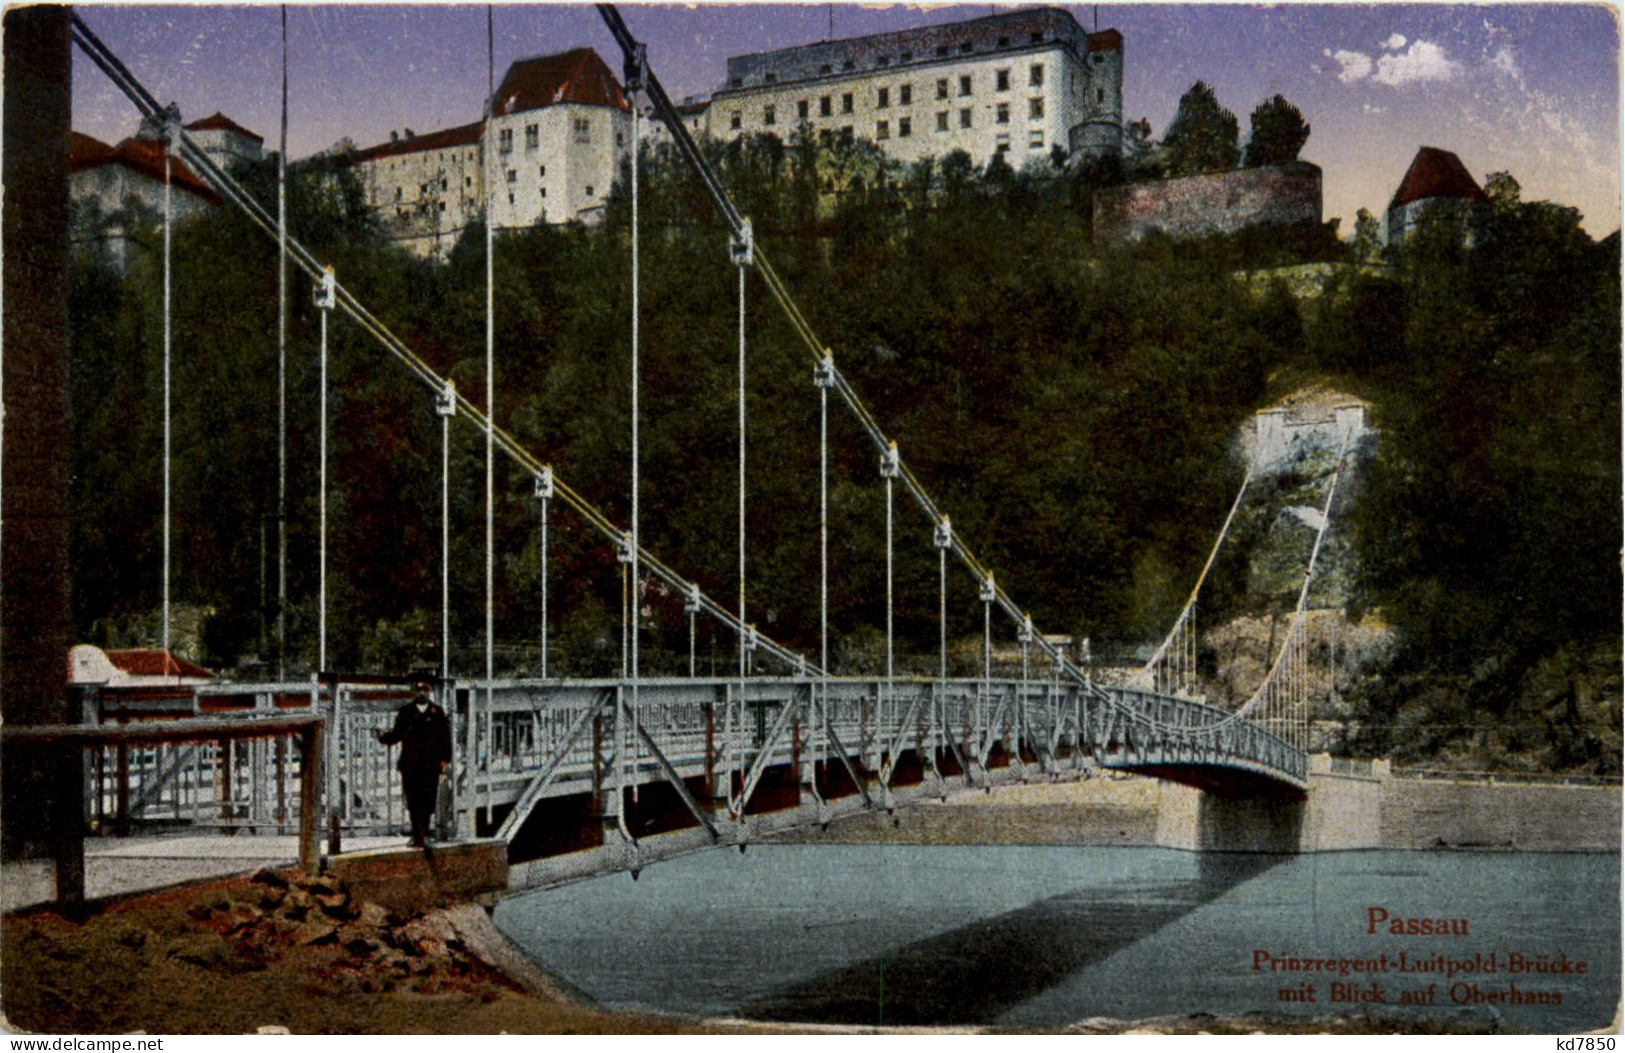 Passau, Prinz Luitpold Brücke - Passau